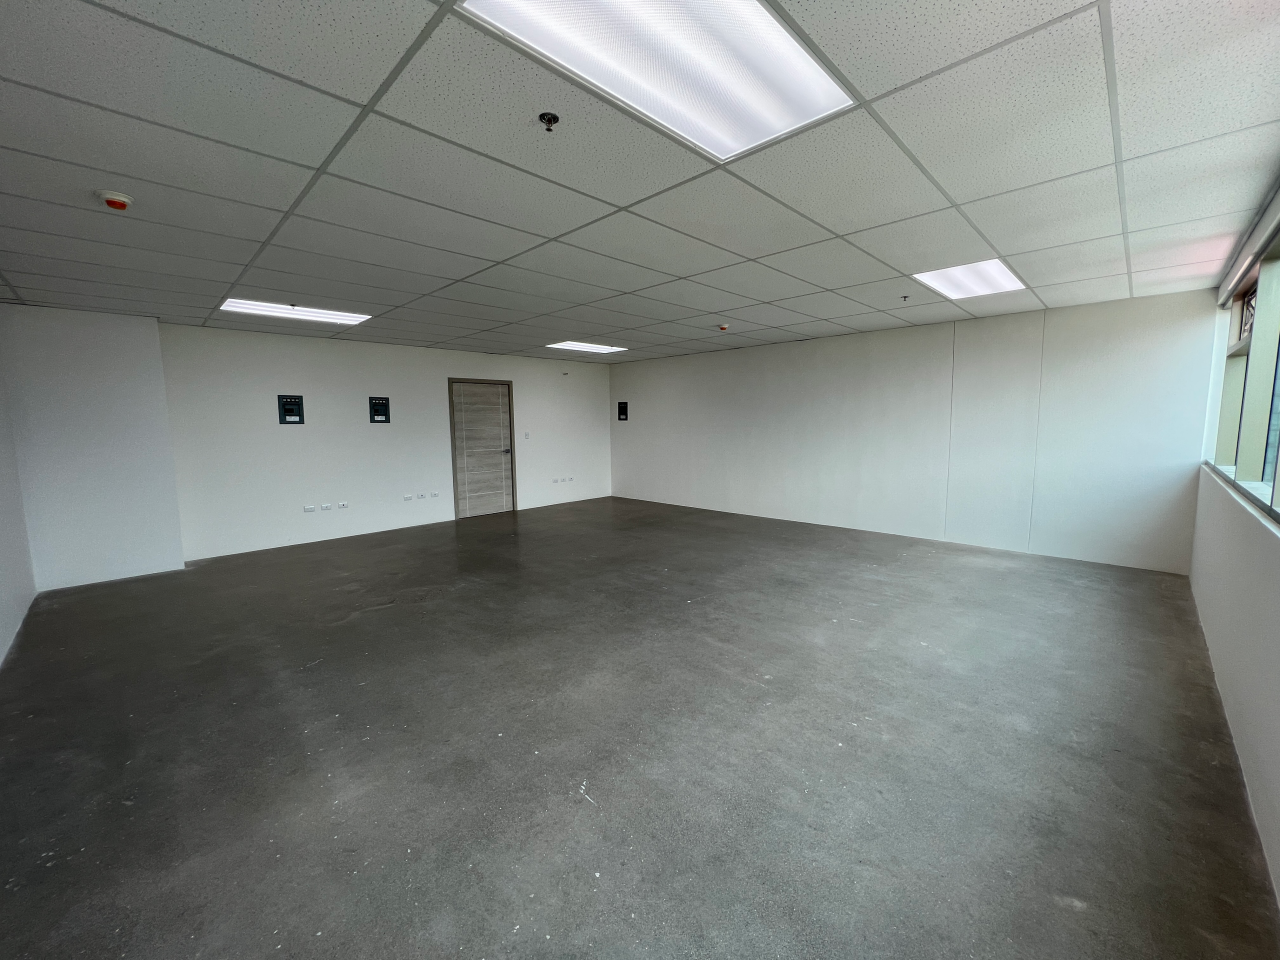 Espacio de oficina con piso de cemento sólido, paredes y techo de tabla yeso color blanco, lámparas led rectangulares empotradas y una ventana larga horizontal al fondo una puerta de madera.